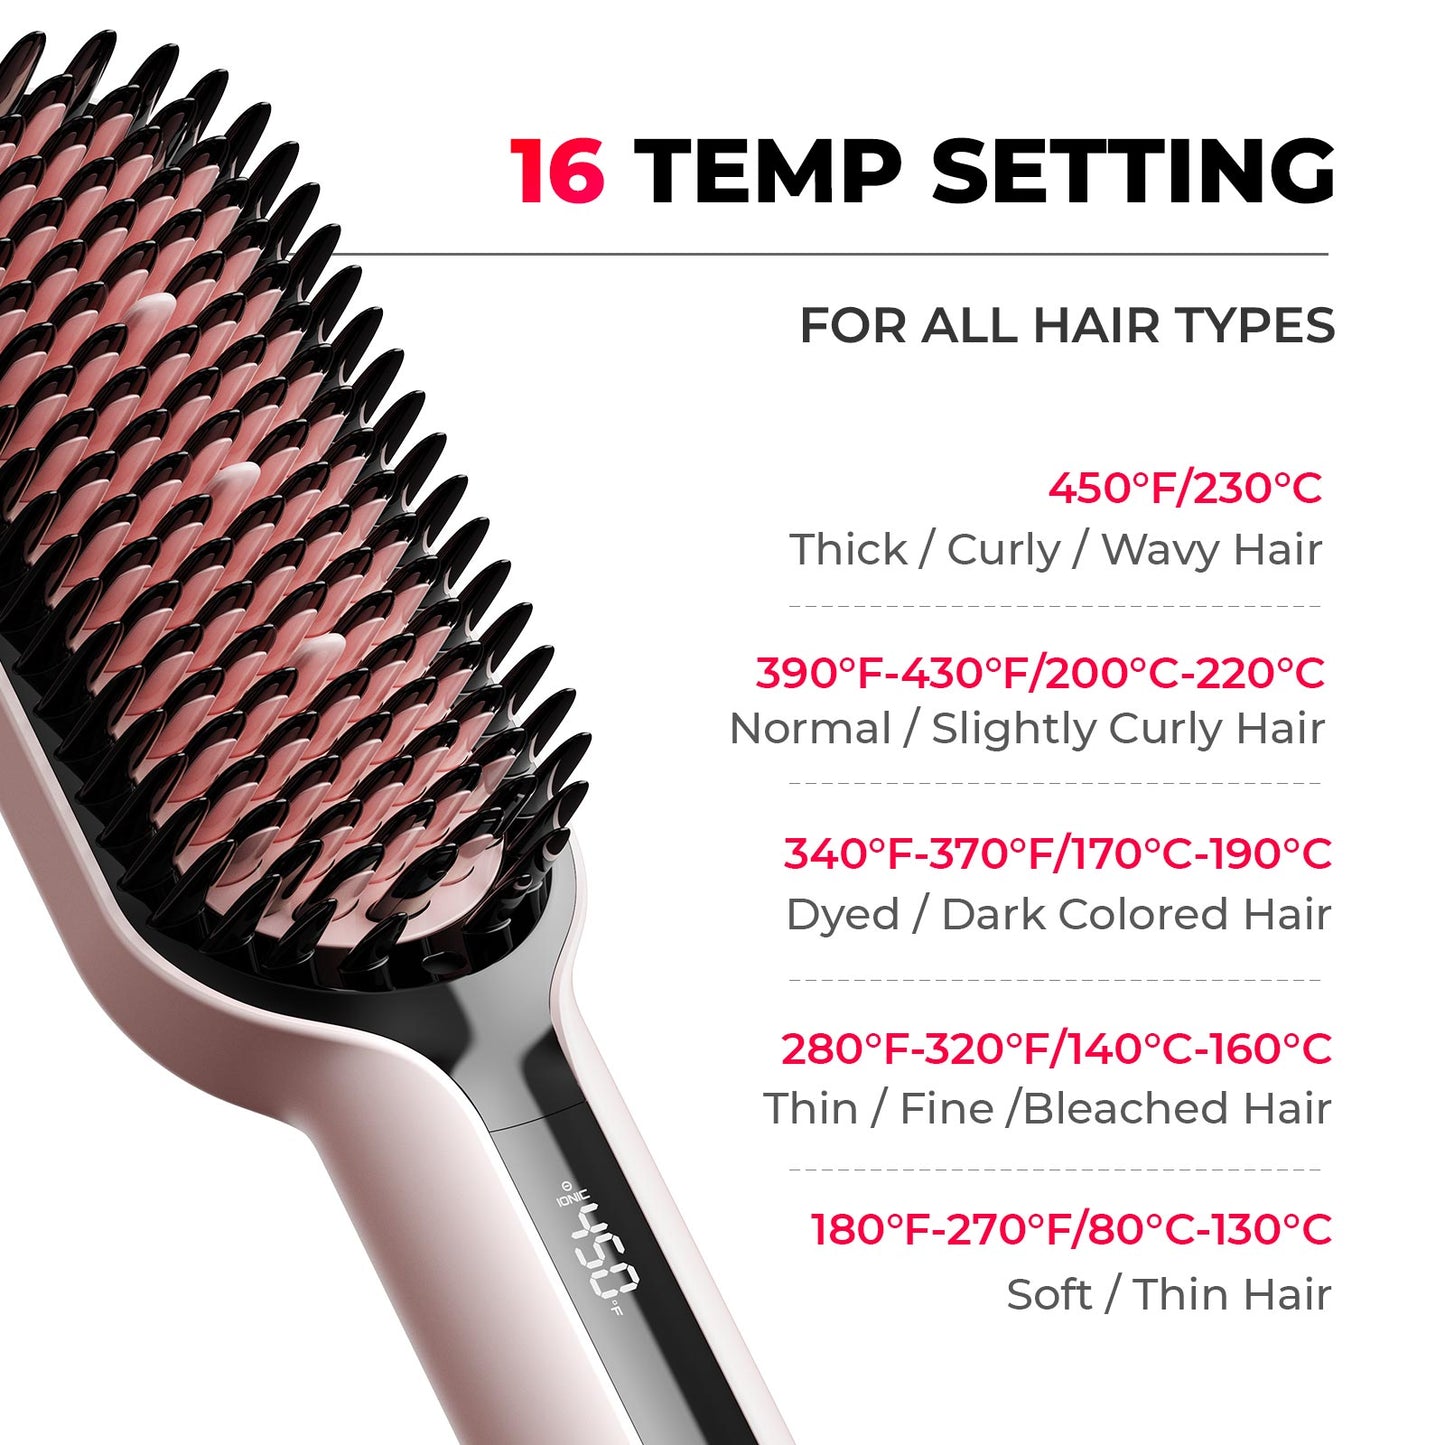 
                  
                    TYMO iONIC PLUS PINK Hair Straightener Brush
                  
                